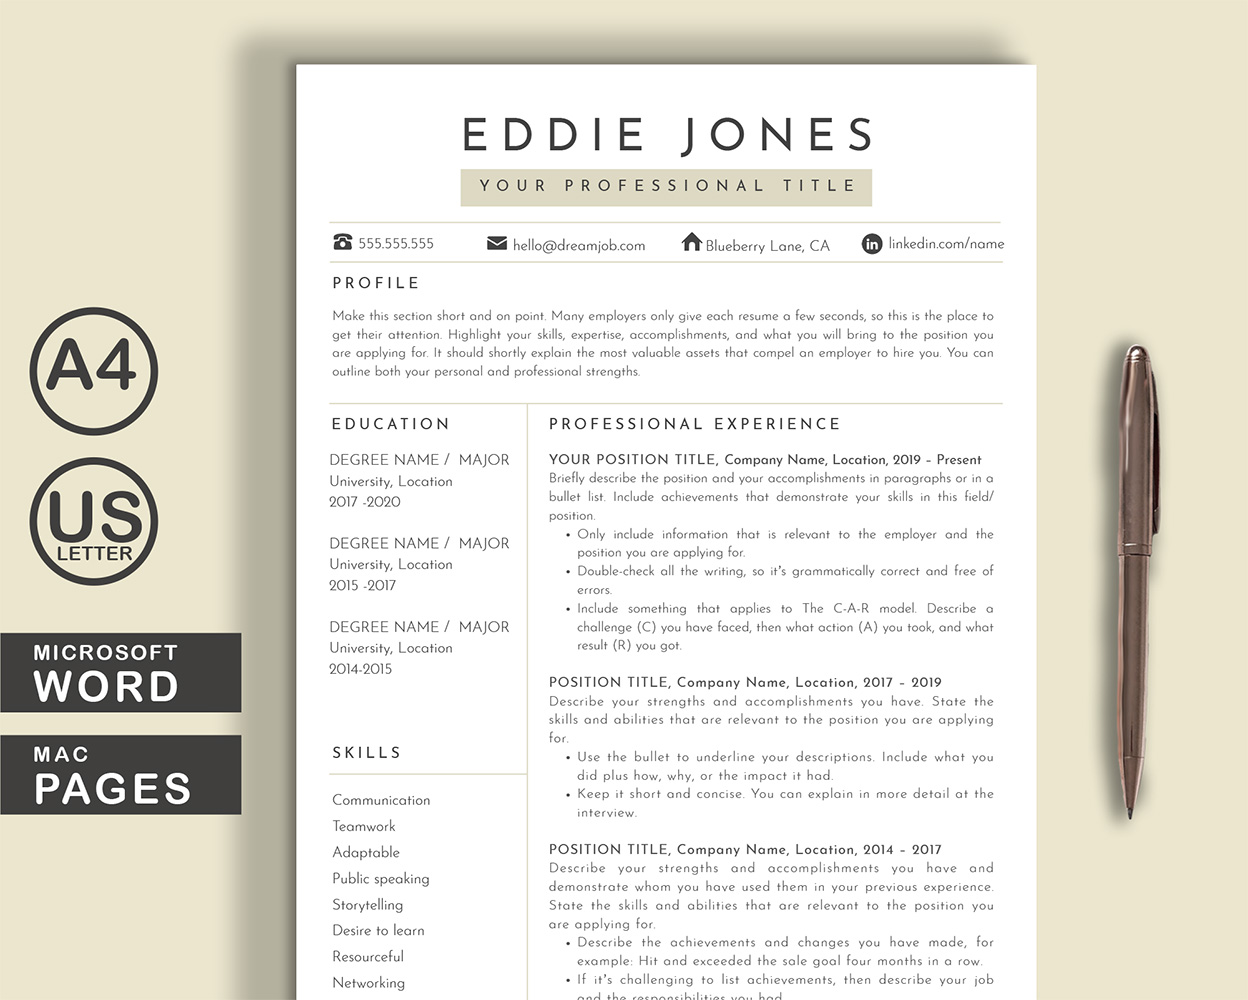 Eddie Word Pages Printable Resume Templates